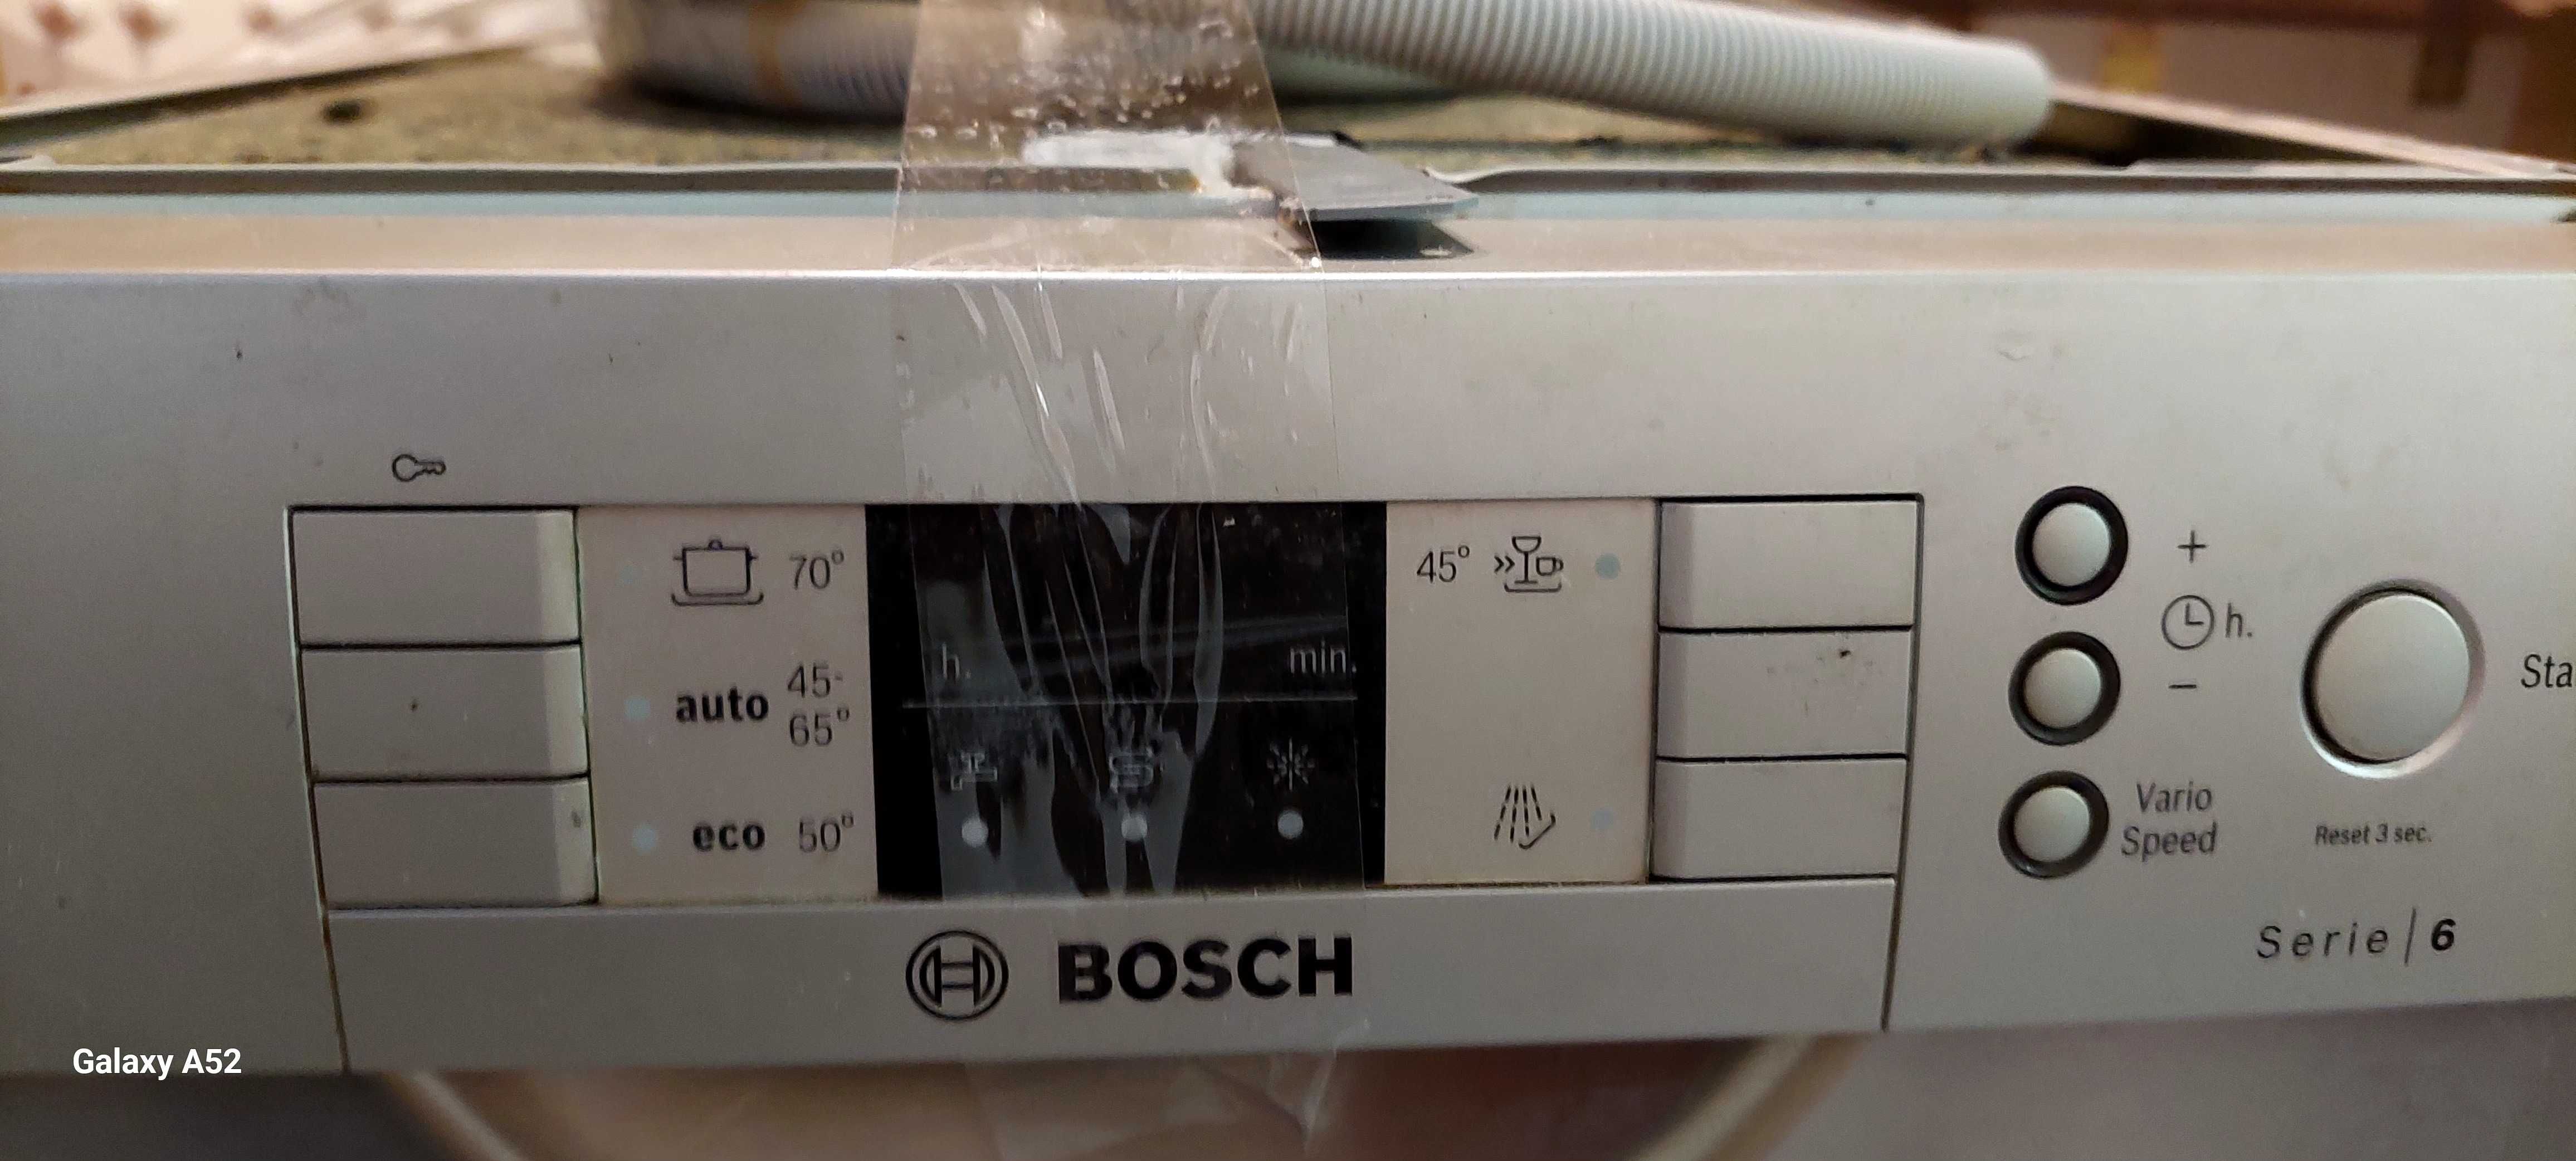 Посудомоечная машина Bosch 45 см. Чистая, рабочая, в порядке.